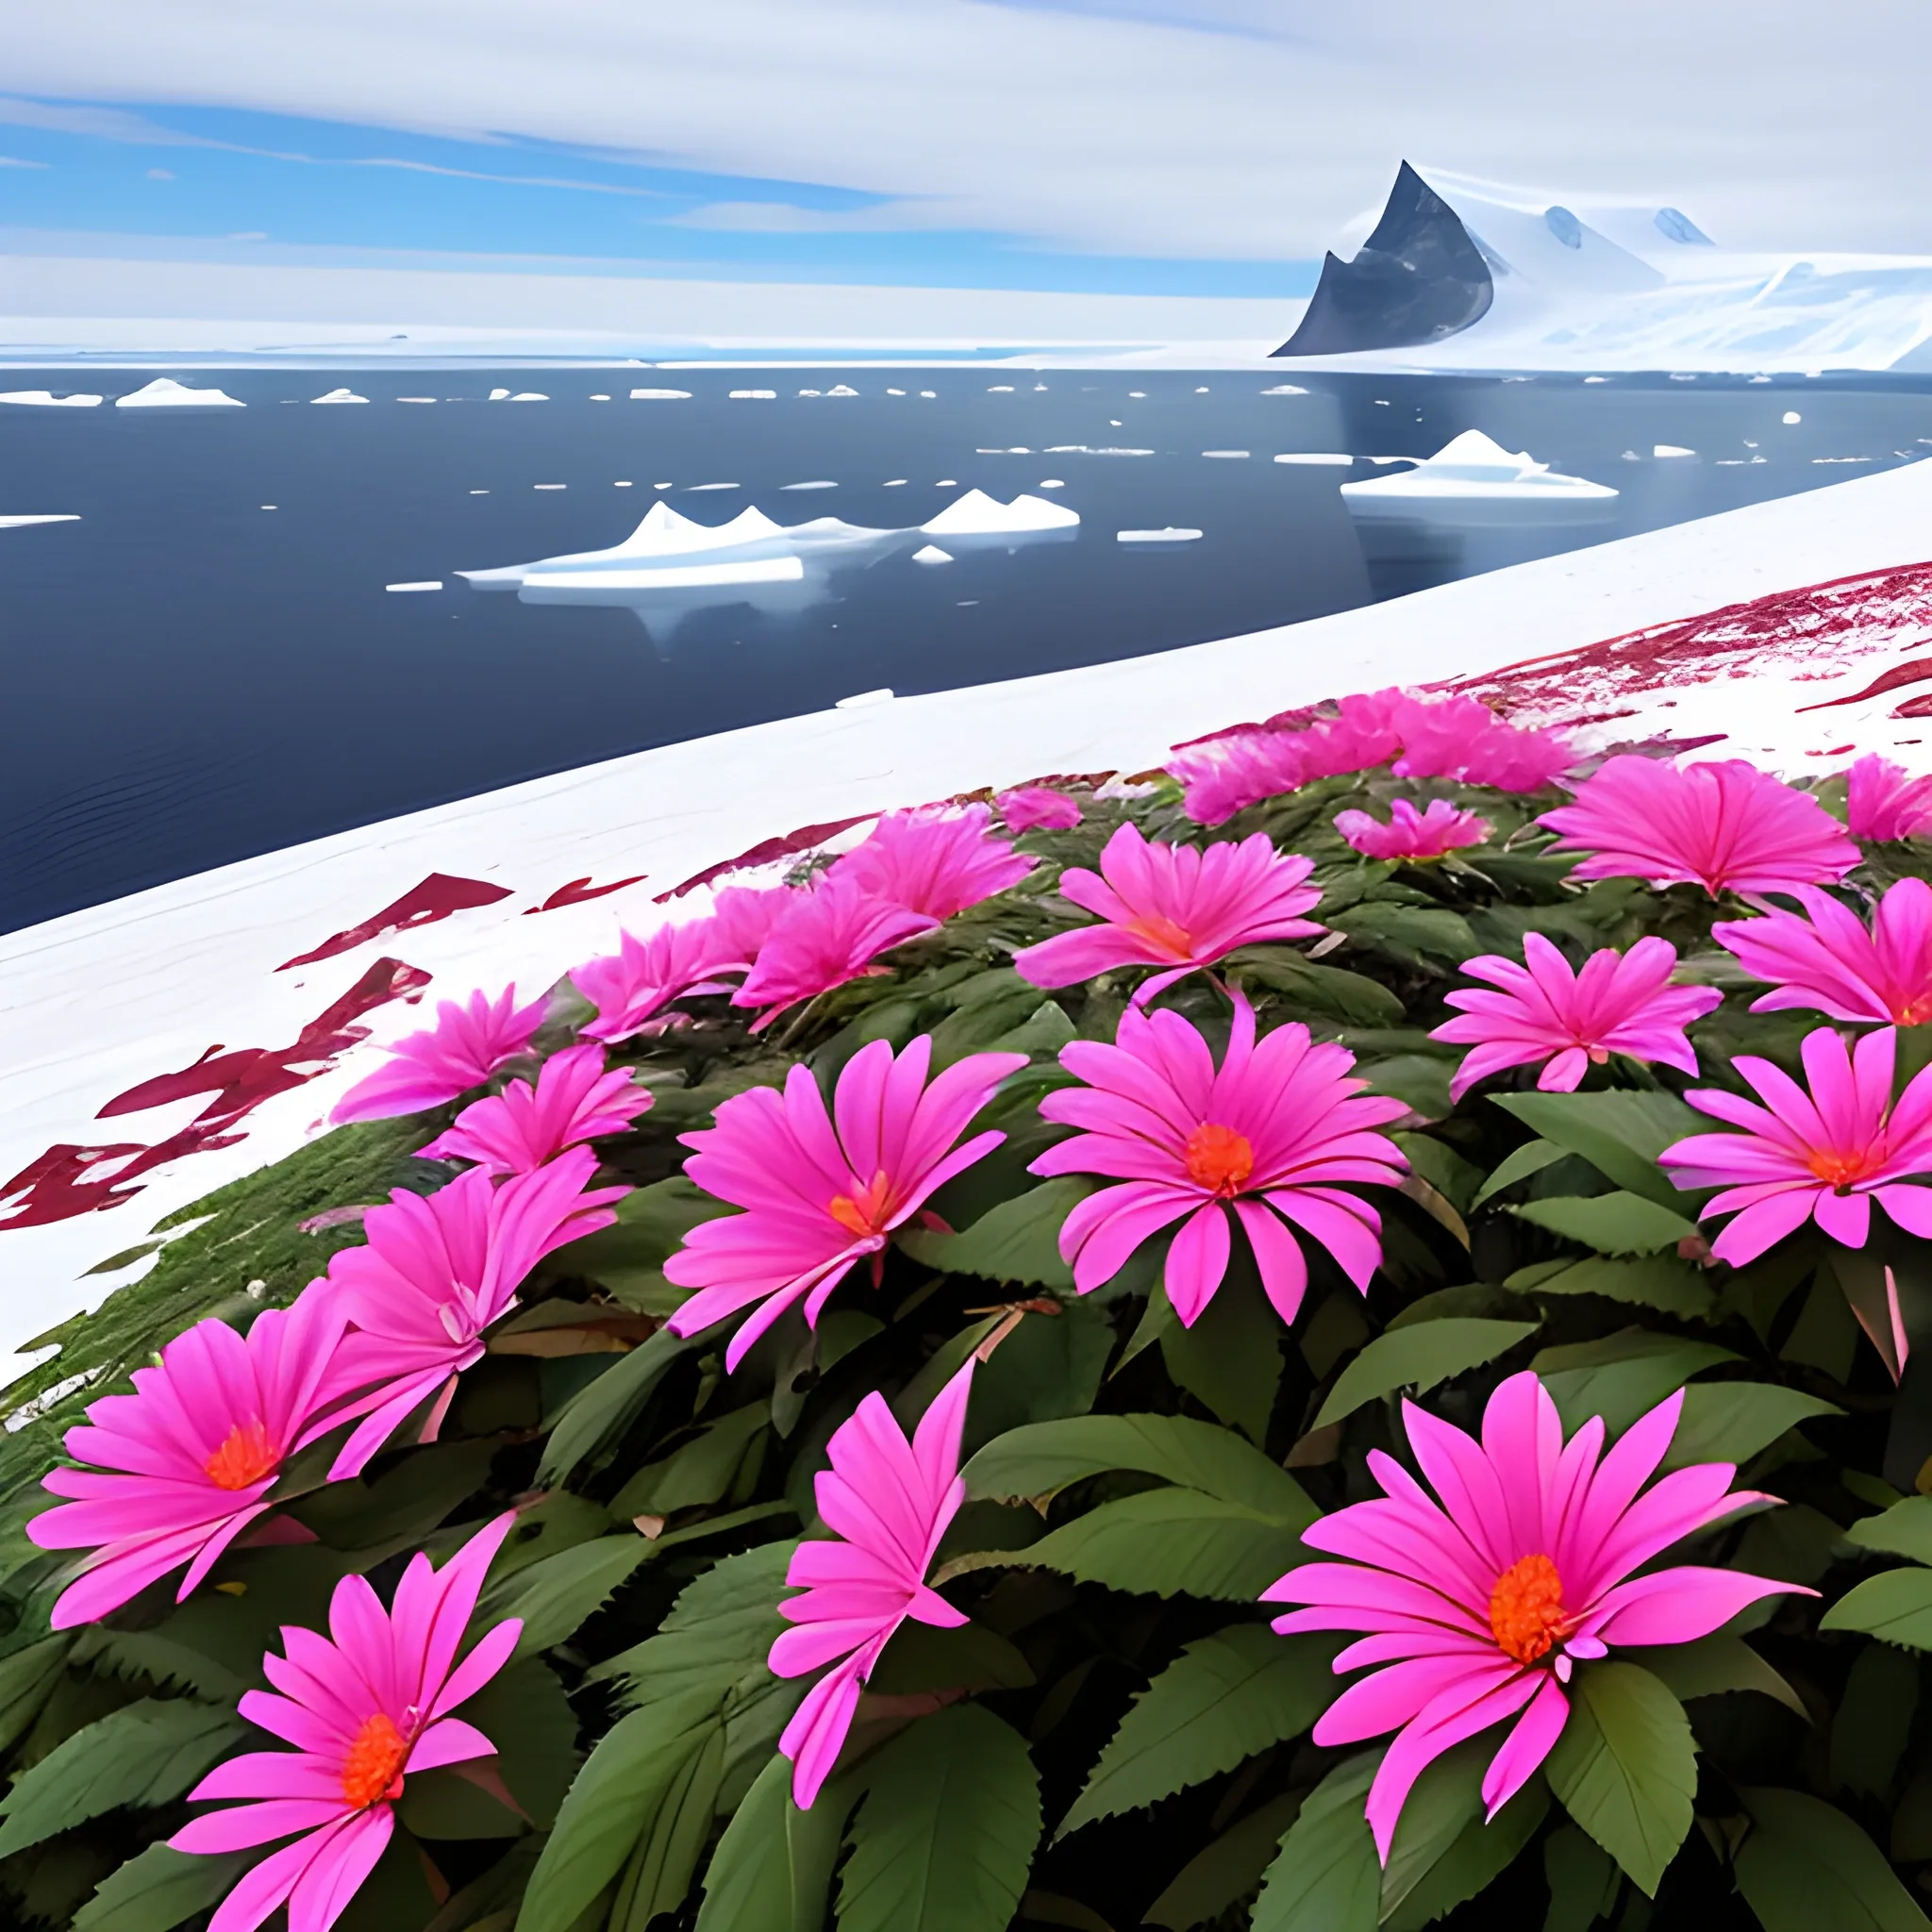 flowers on Antarctic

